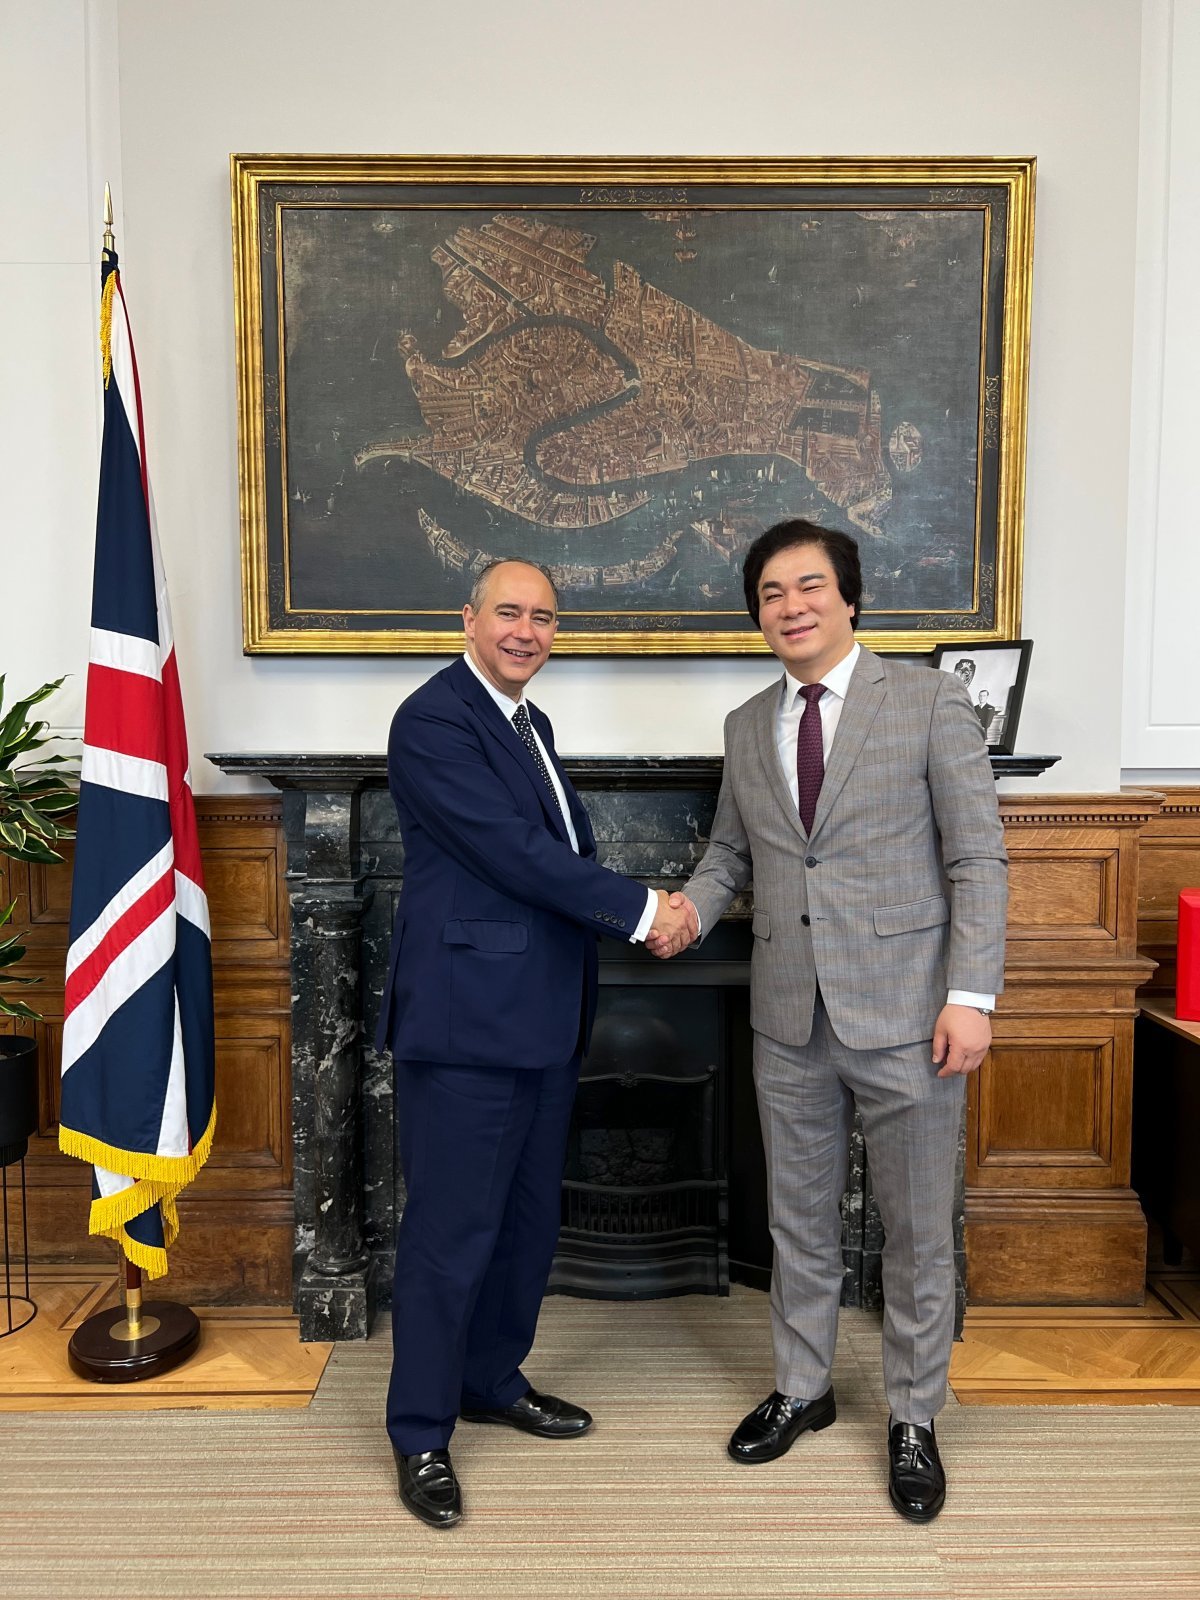 유웅환 한국벤처투자 대표(오른쪽)와 도미닉 존슨 영국 투자장관은 6월 영국 런던에서 만나 양국의 투자 협력 방안을 모색했다. 한국벤처투자 제공